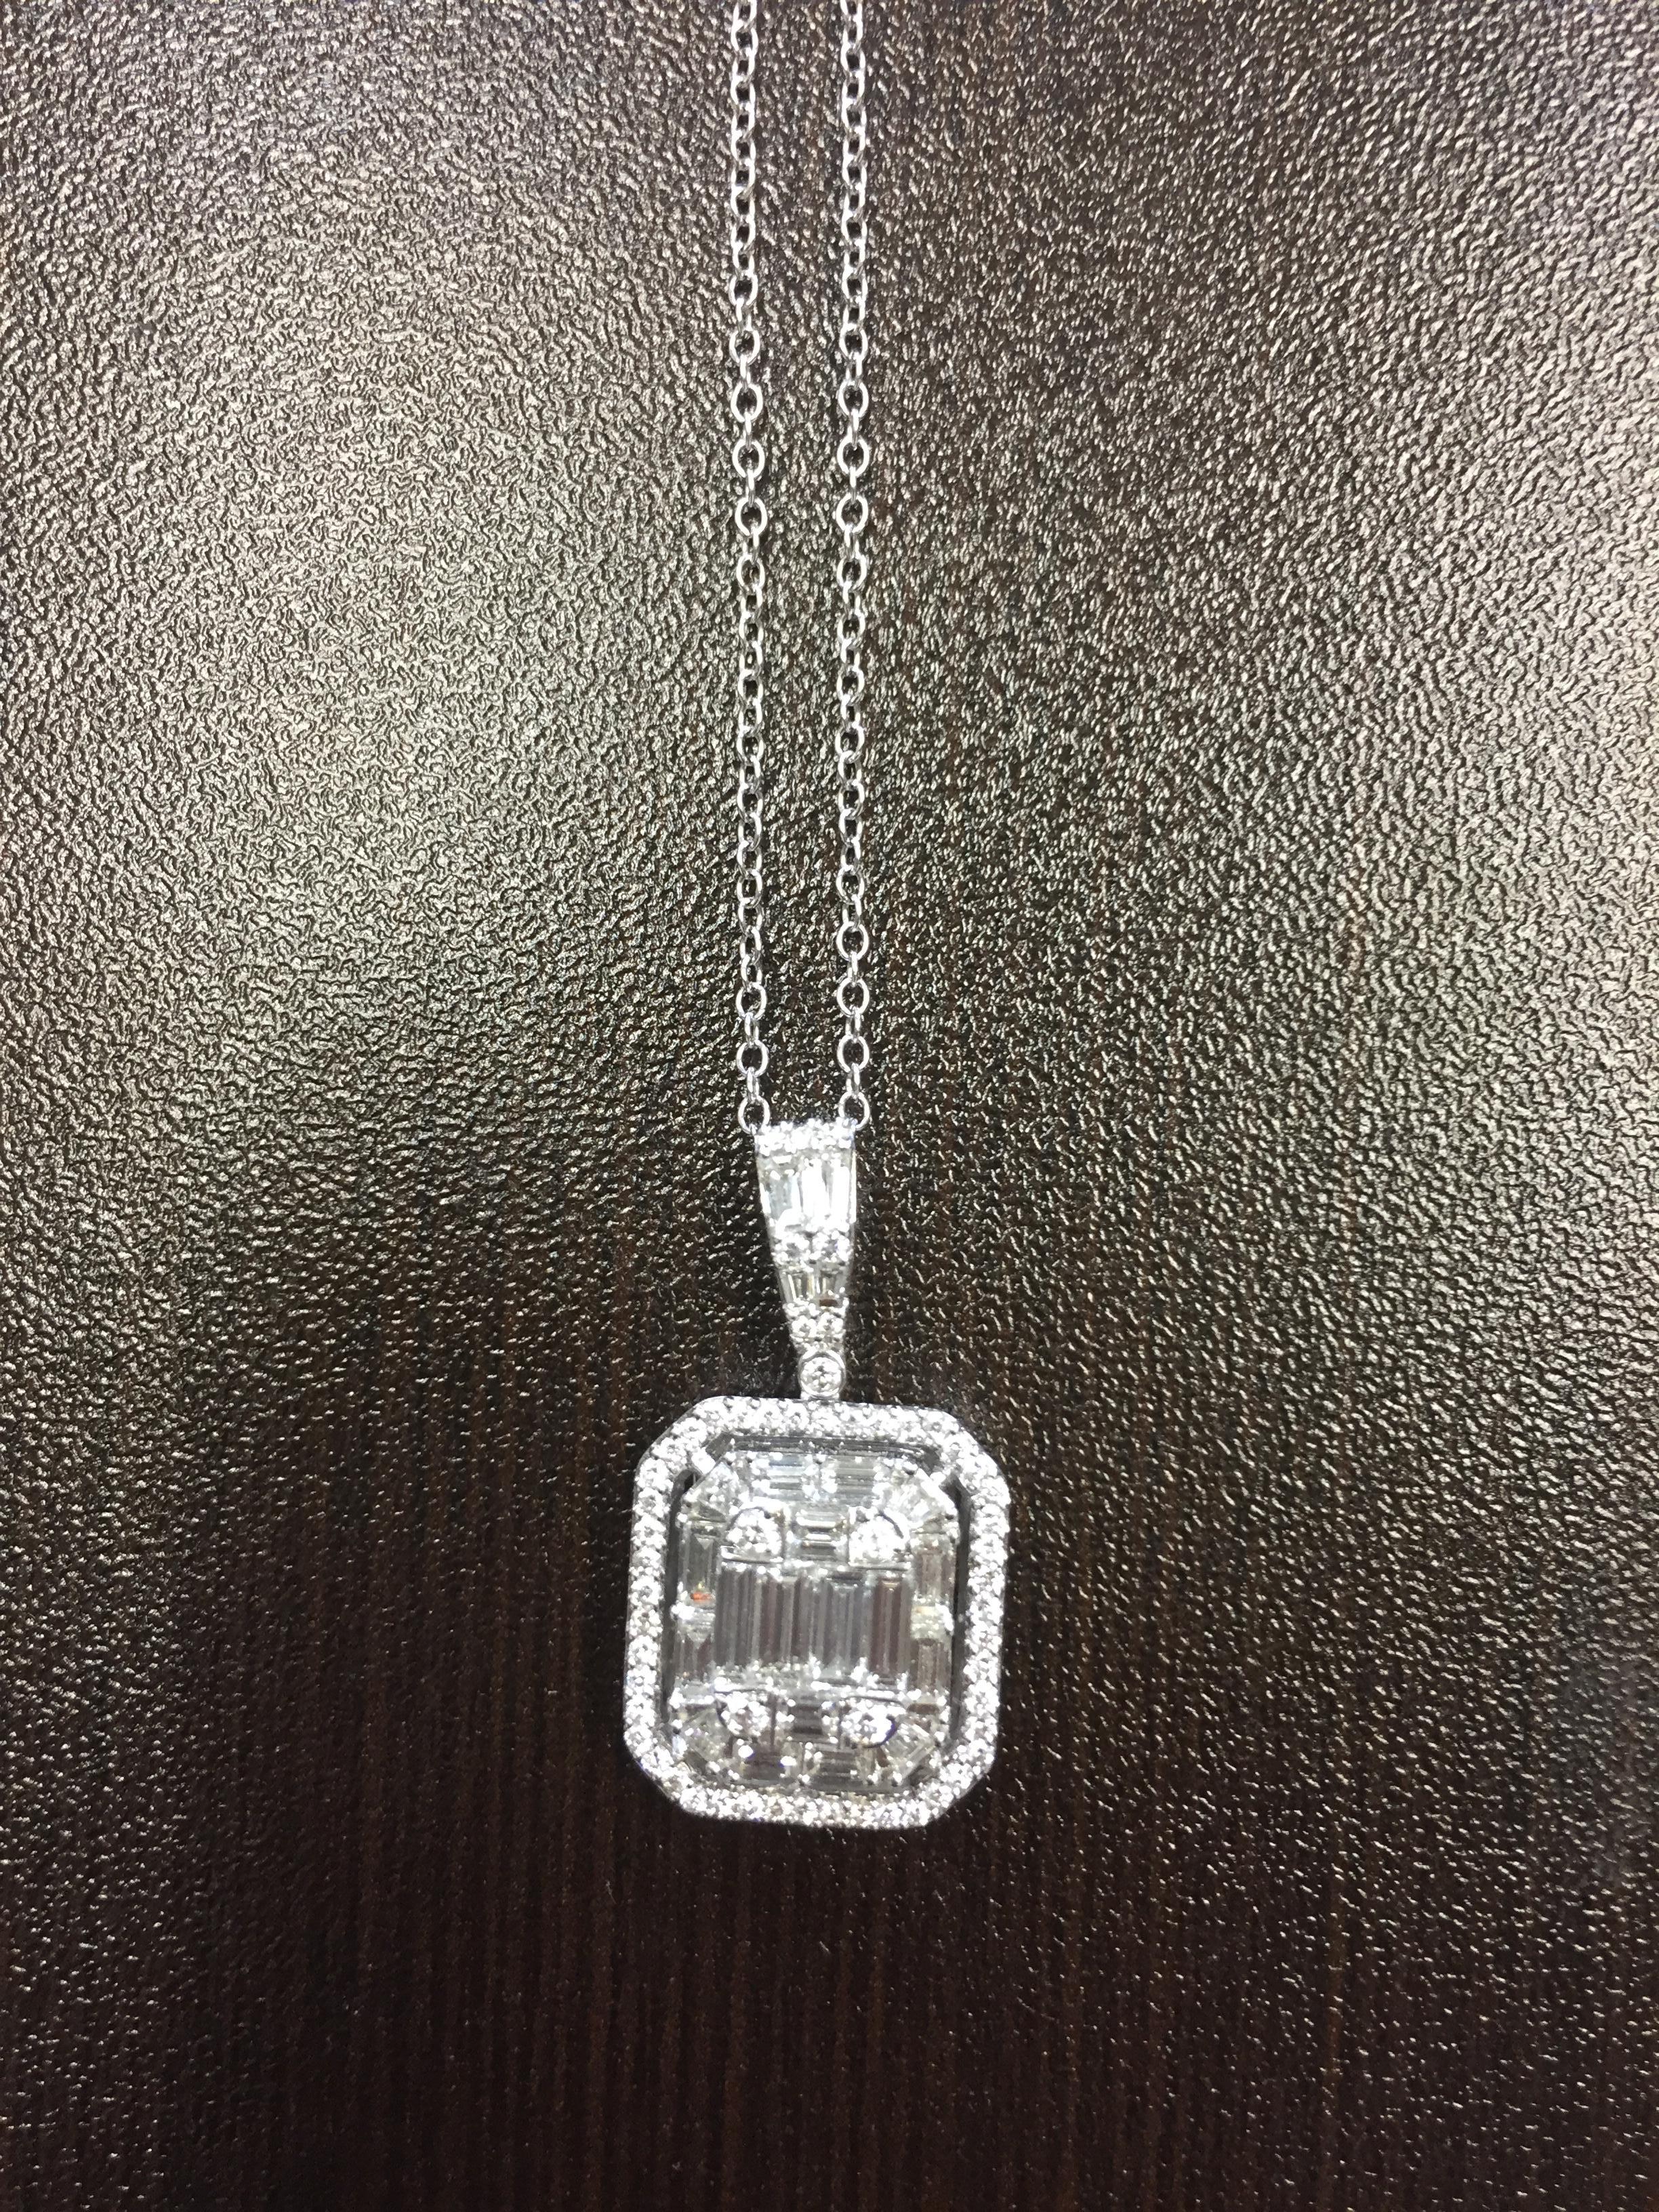 2 Carat Emerald Cut Diamond Pendant For Sale 1